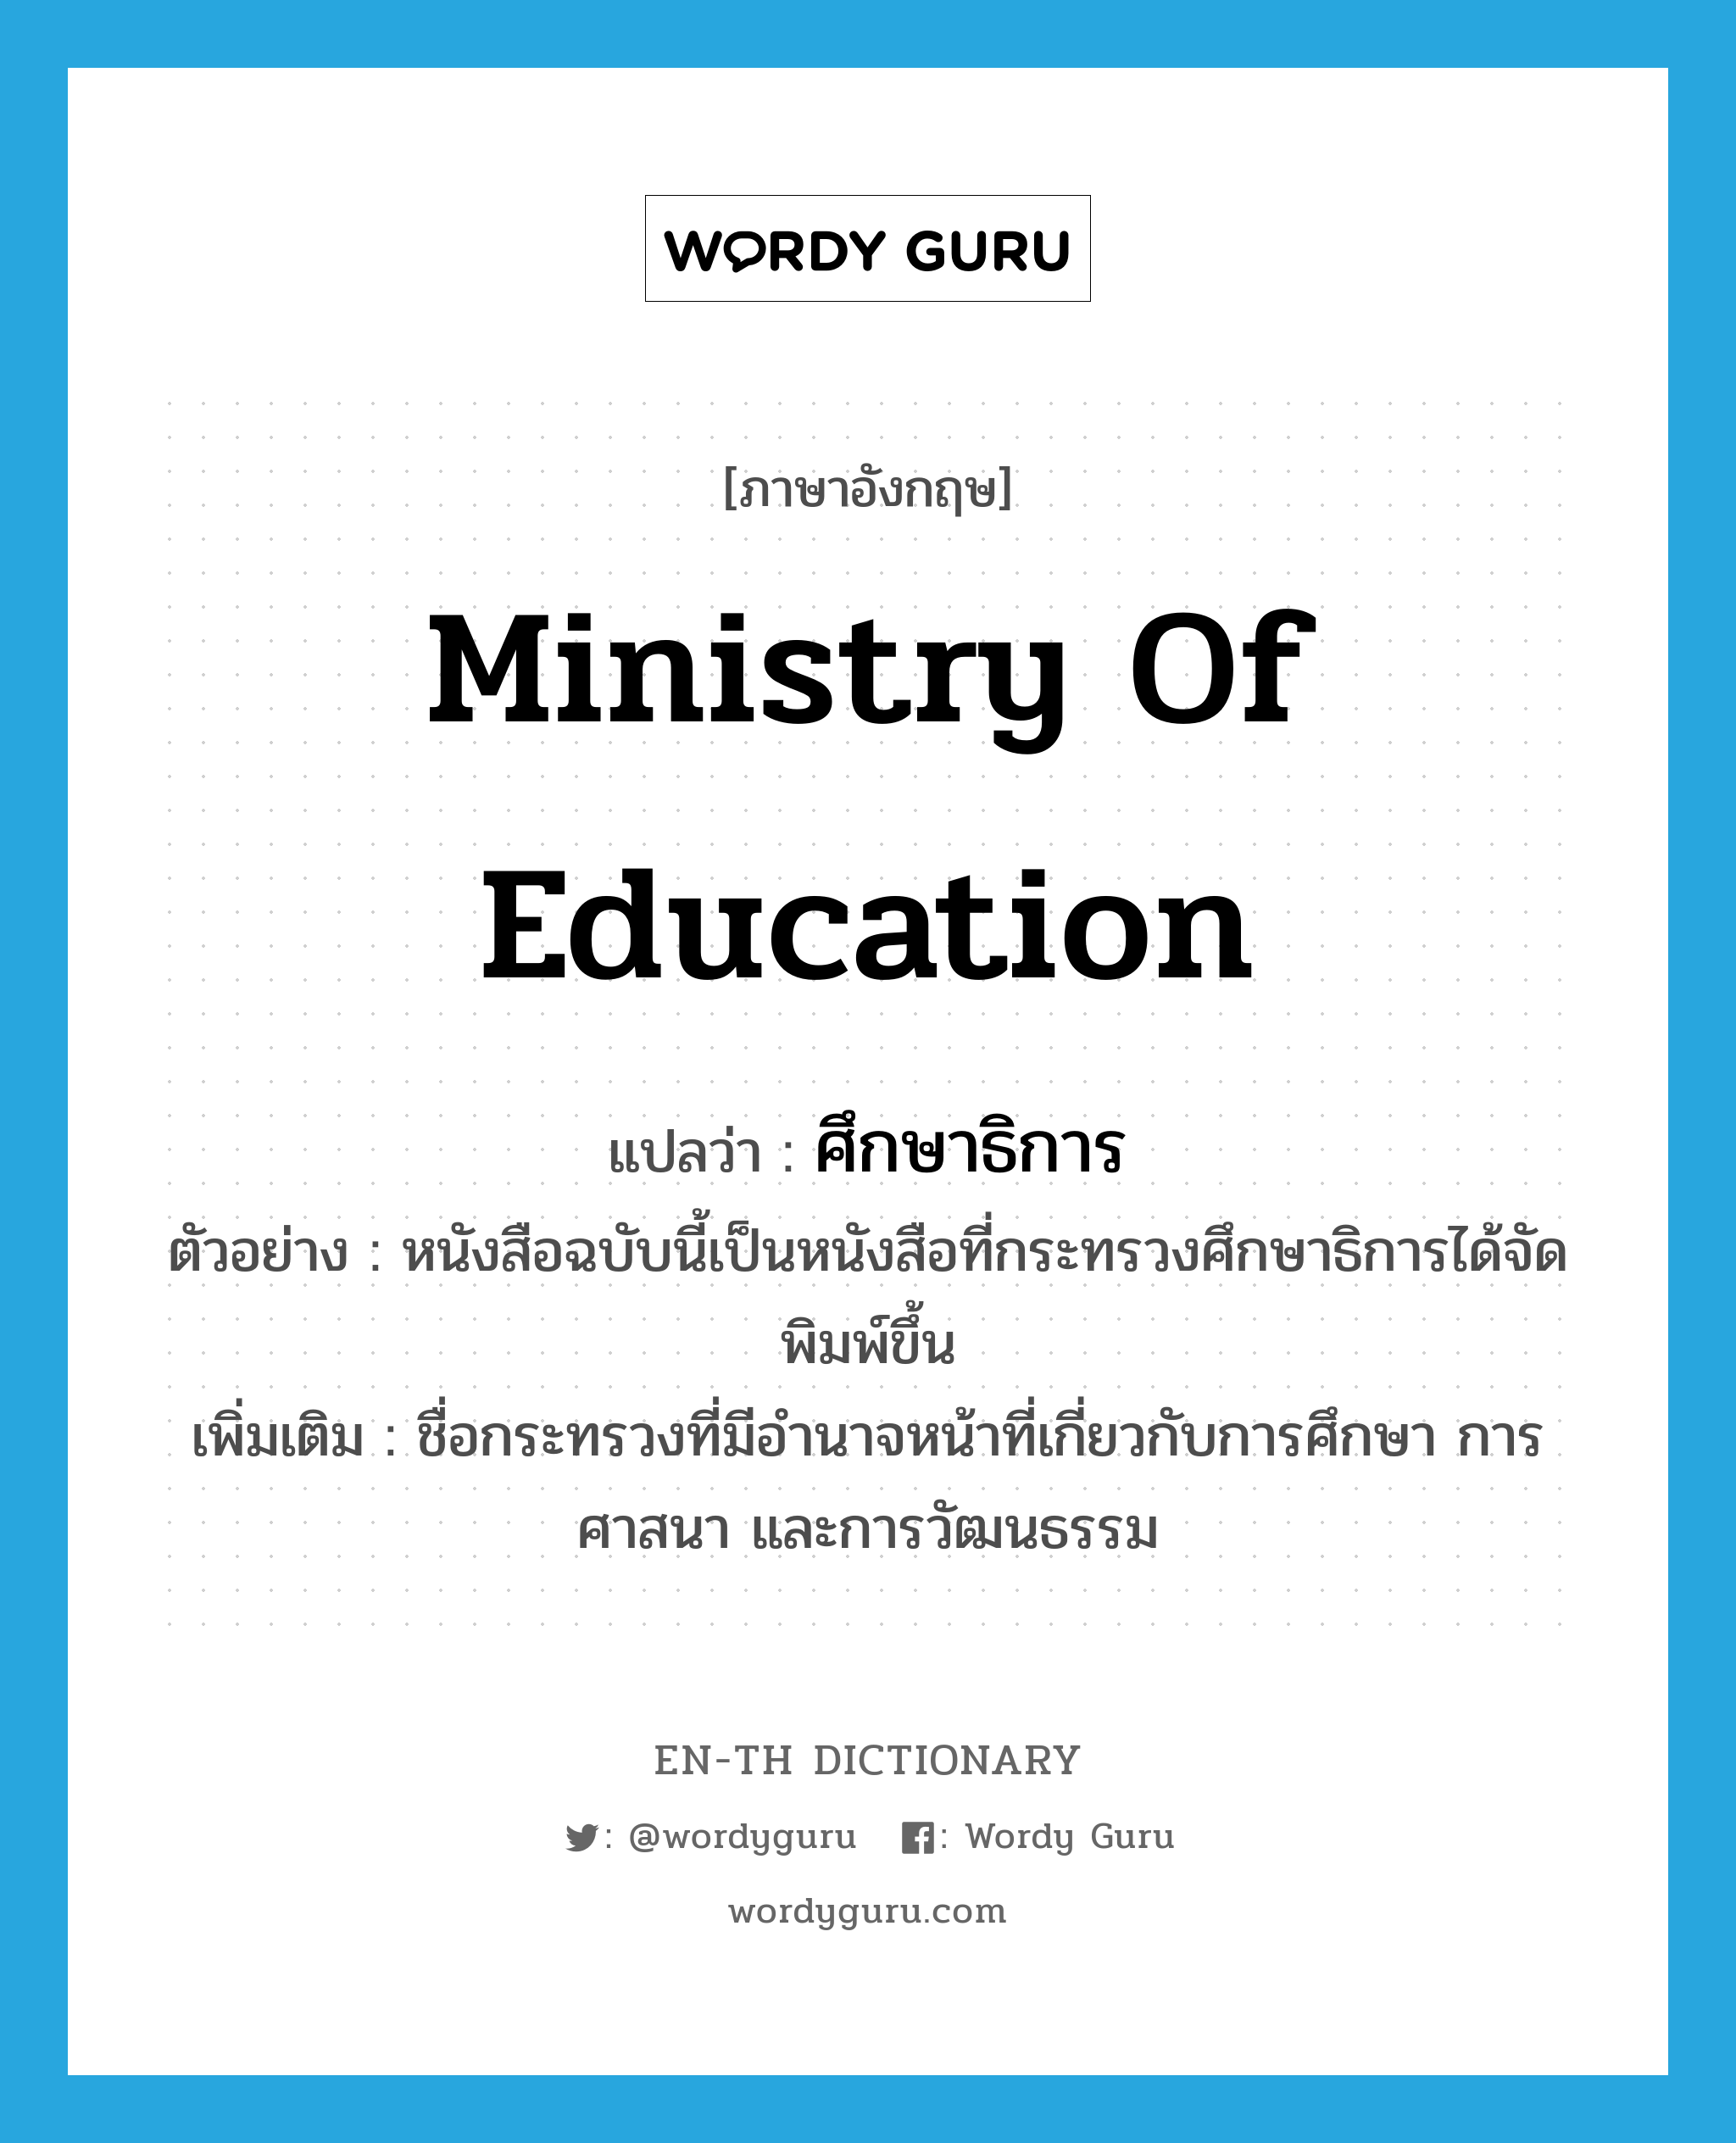 Ministry of Education แปลว่า?, คำศัพท์ภาษาอังกฤษ Ministry of Education แปลว่า ศึกษาธิการ ประเภท N ตัวอย่าง หนังสือฉบับนี้เป็นหนังสือที่กระทรวงศึกษาธิการได้จัดพิมพ์ขึ้น เพิ่มเติม ชื่อกระทรวงที่มีอำนาจหน้าที่เกี่ยวกับการศึกษา การศาสนา และการวัฒนธรรม หมวด N